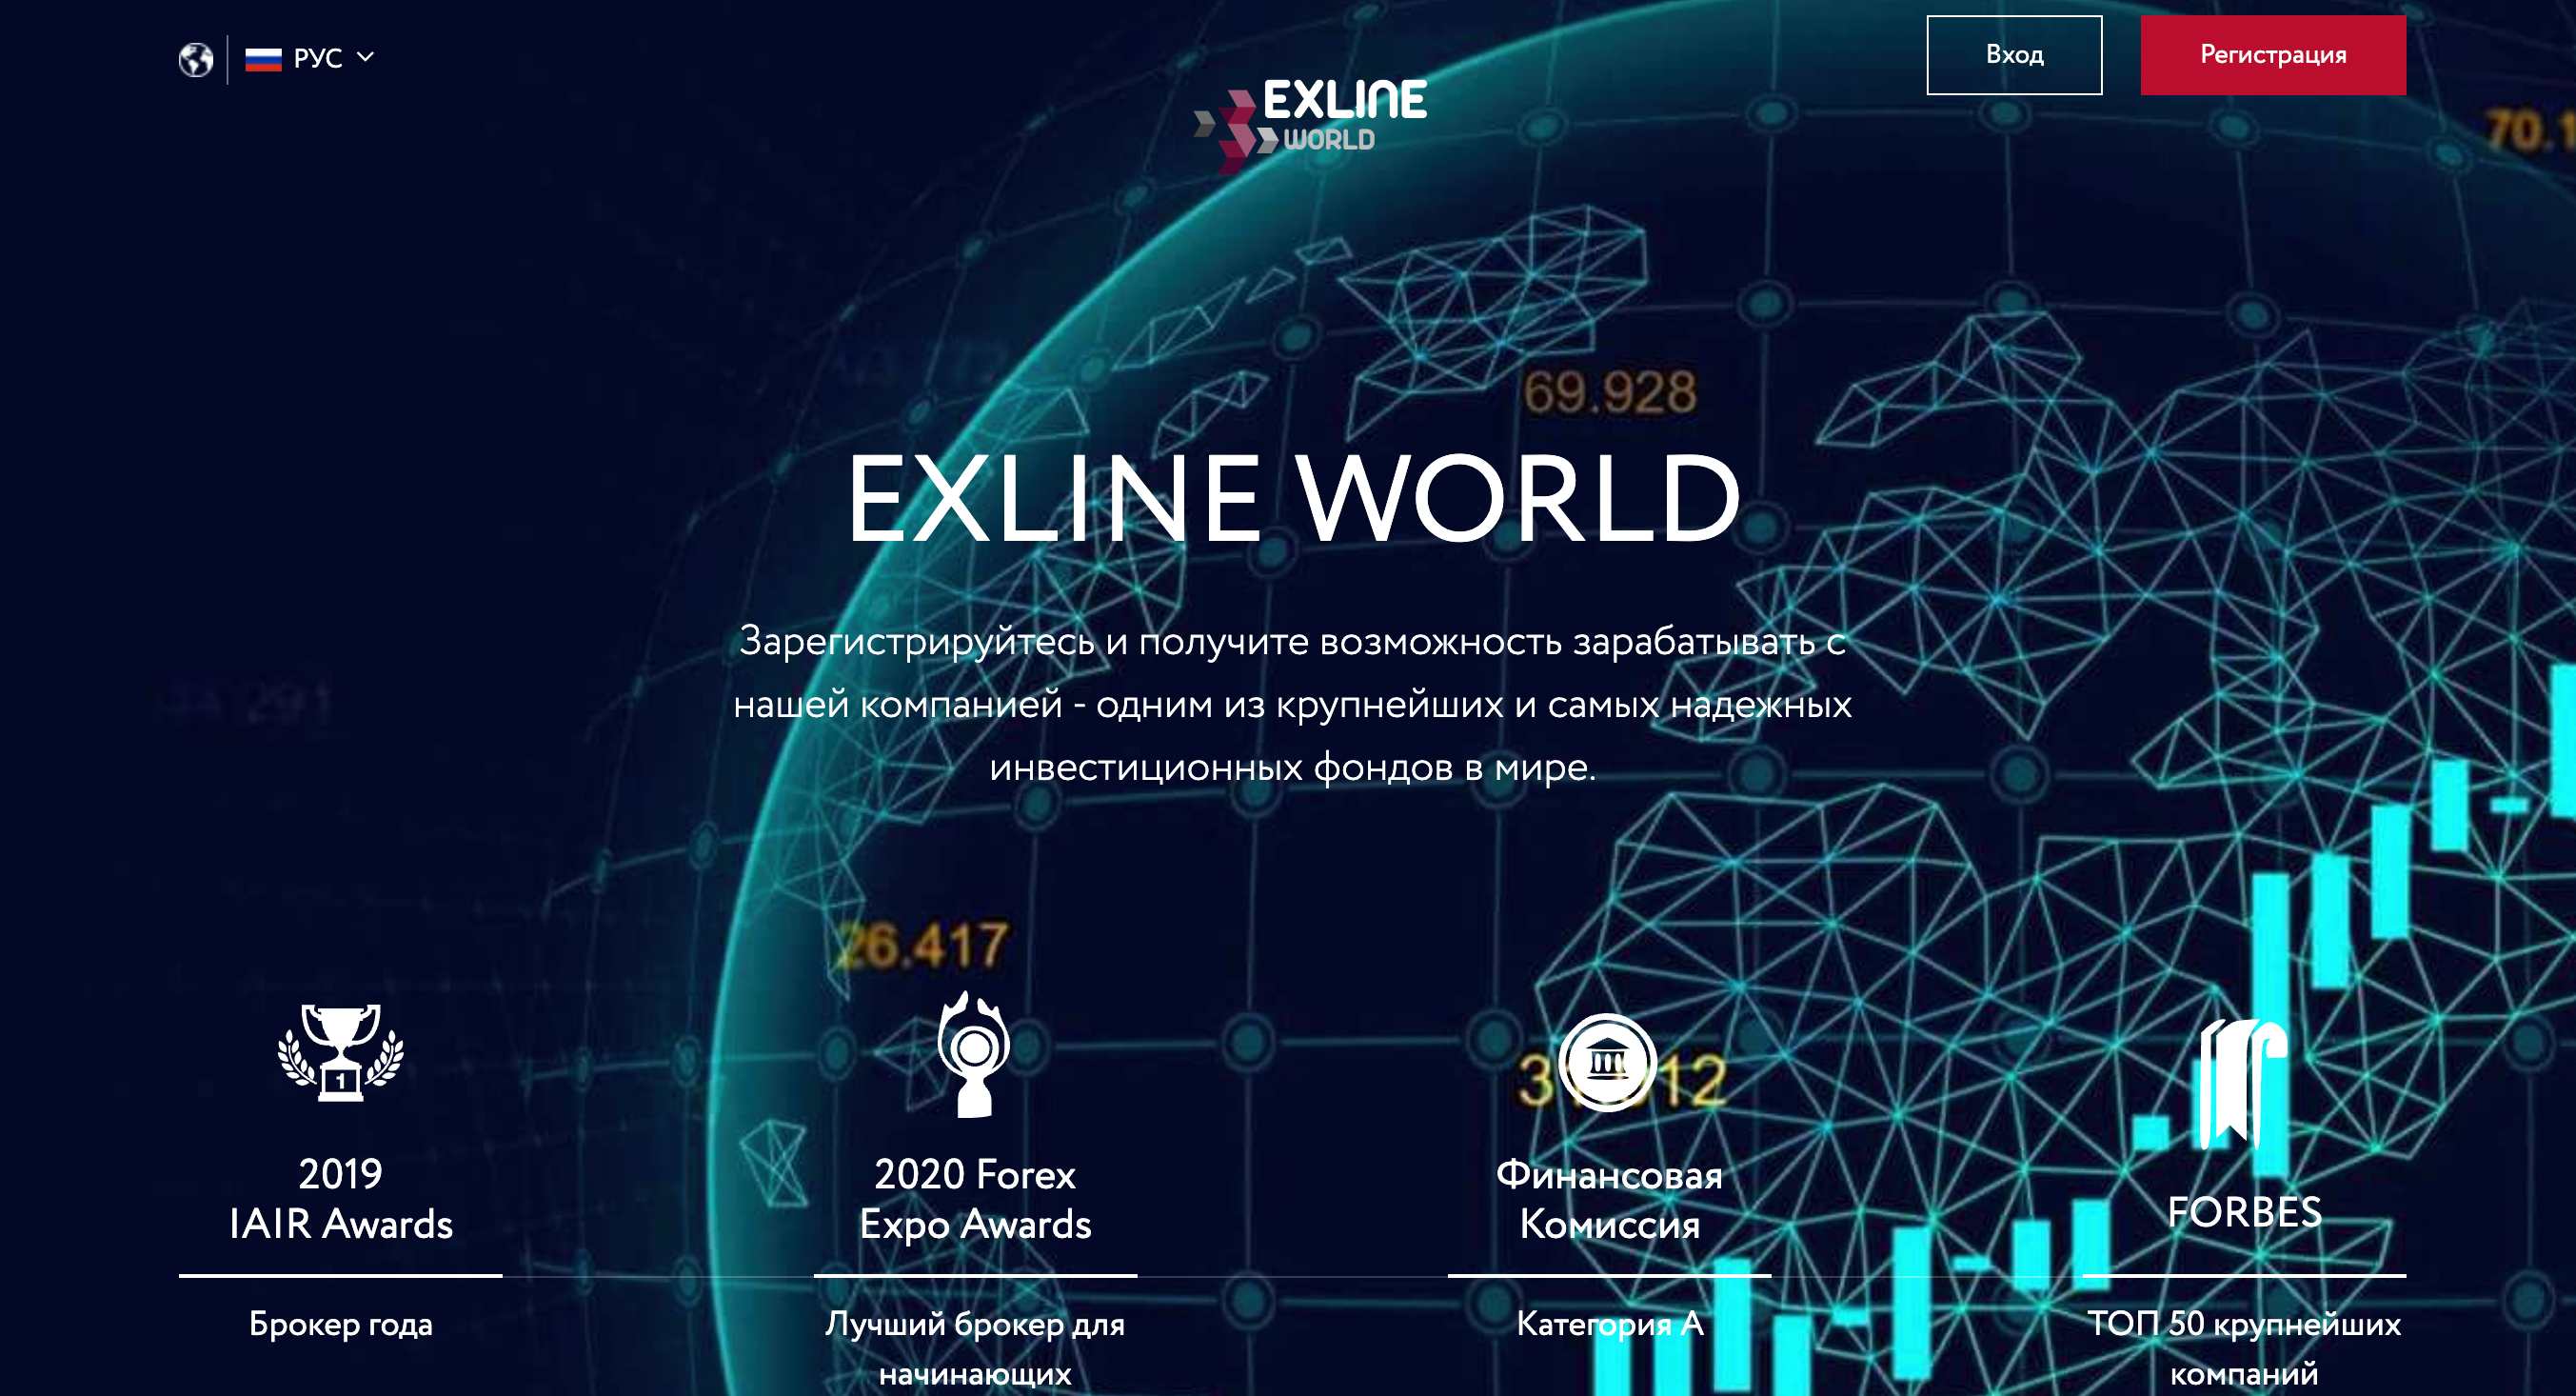 Exline World